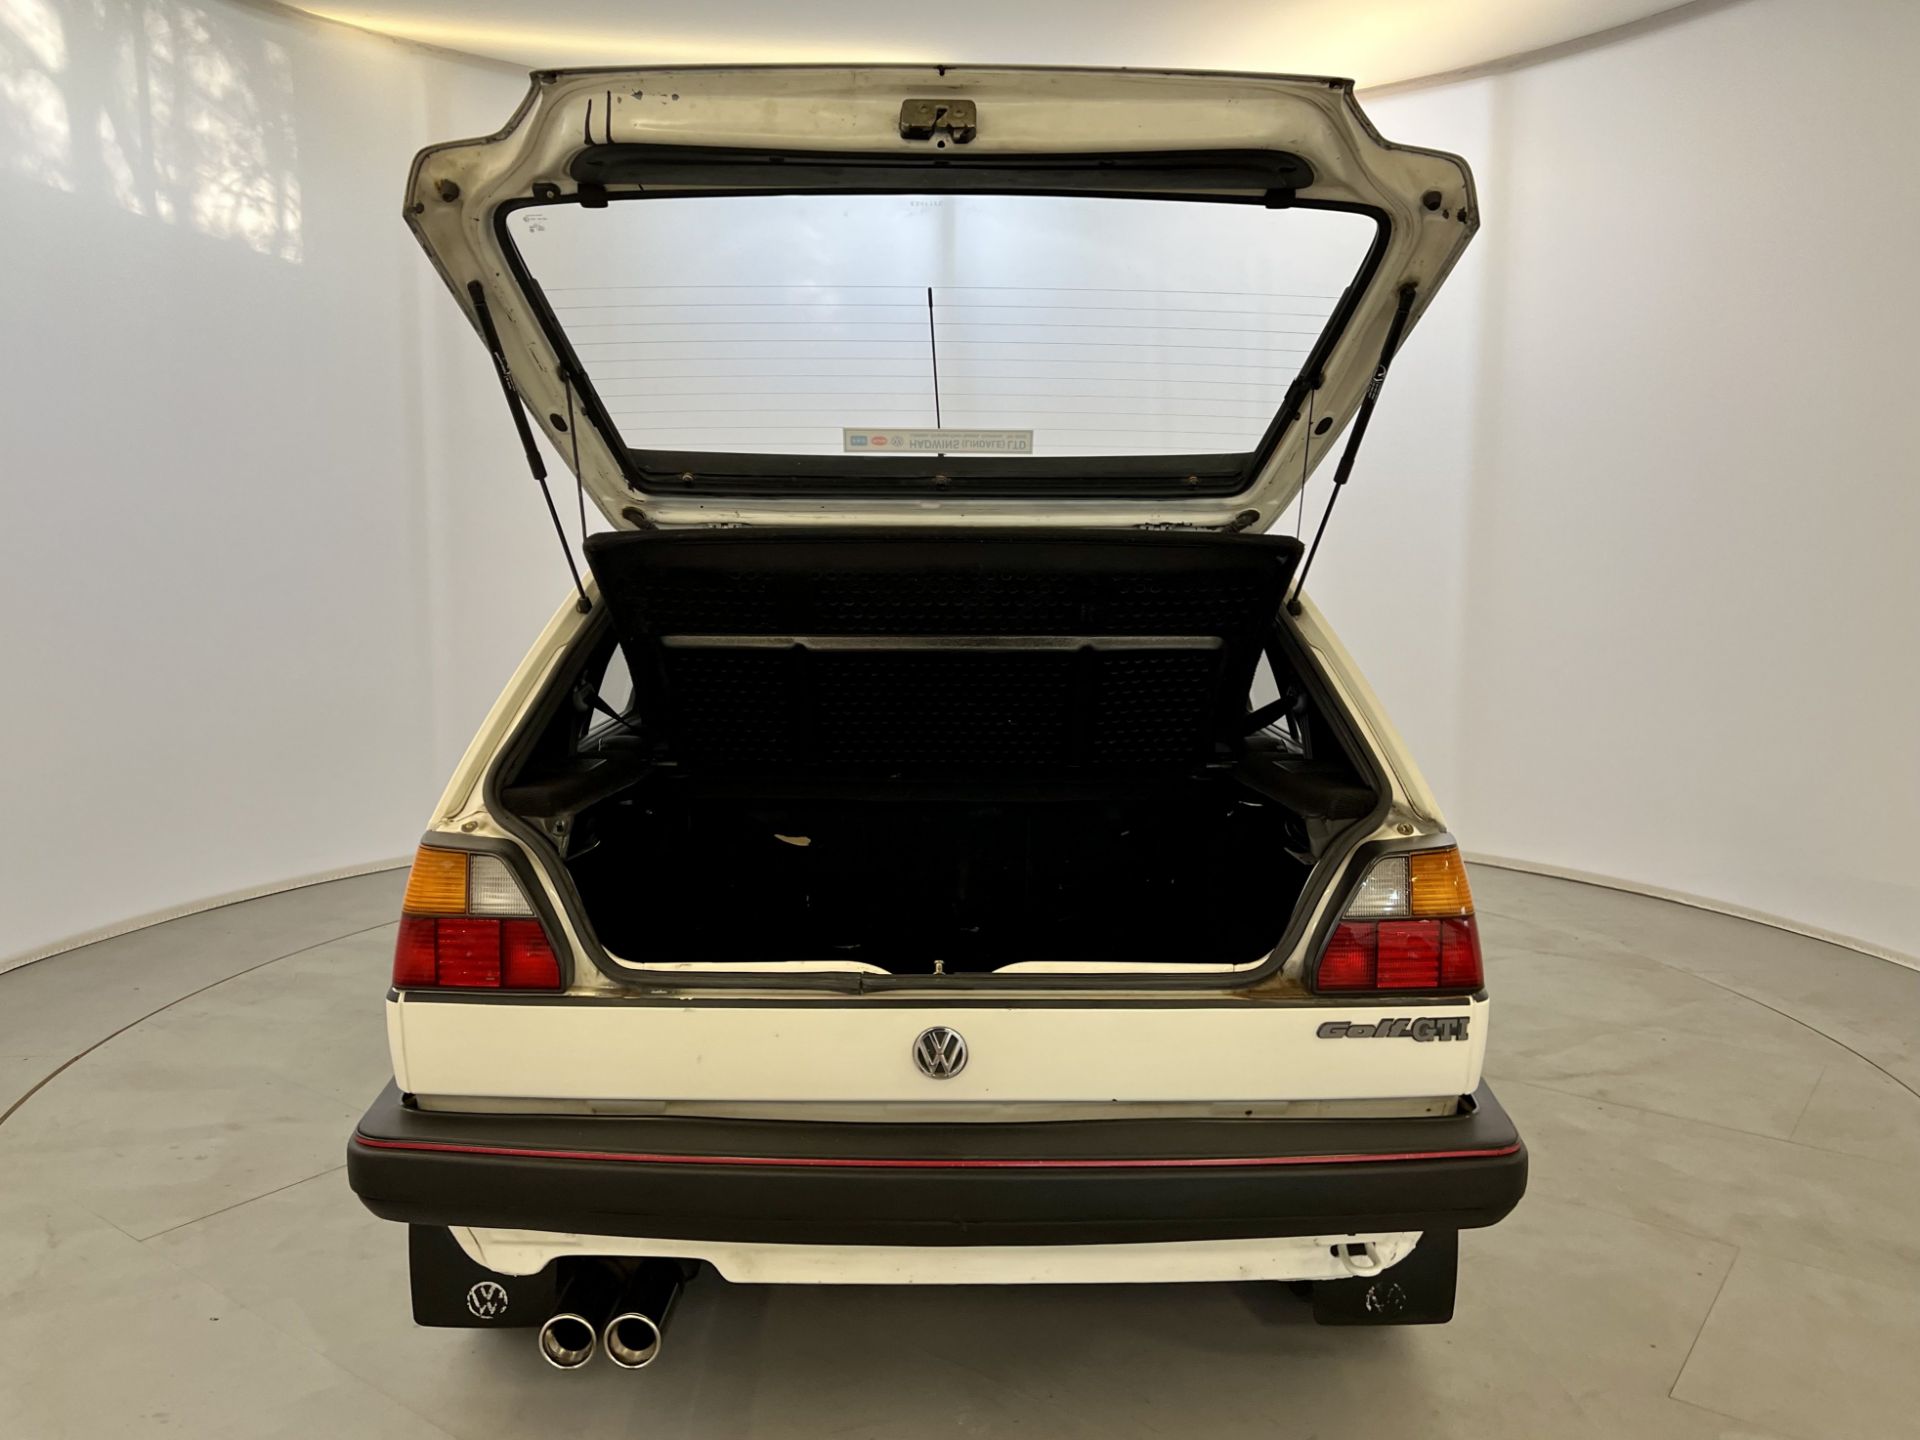 Volkswagen Golf GTI - Image 36 of 40